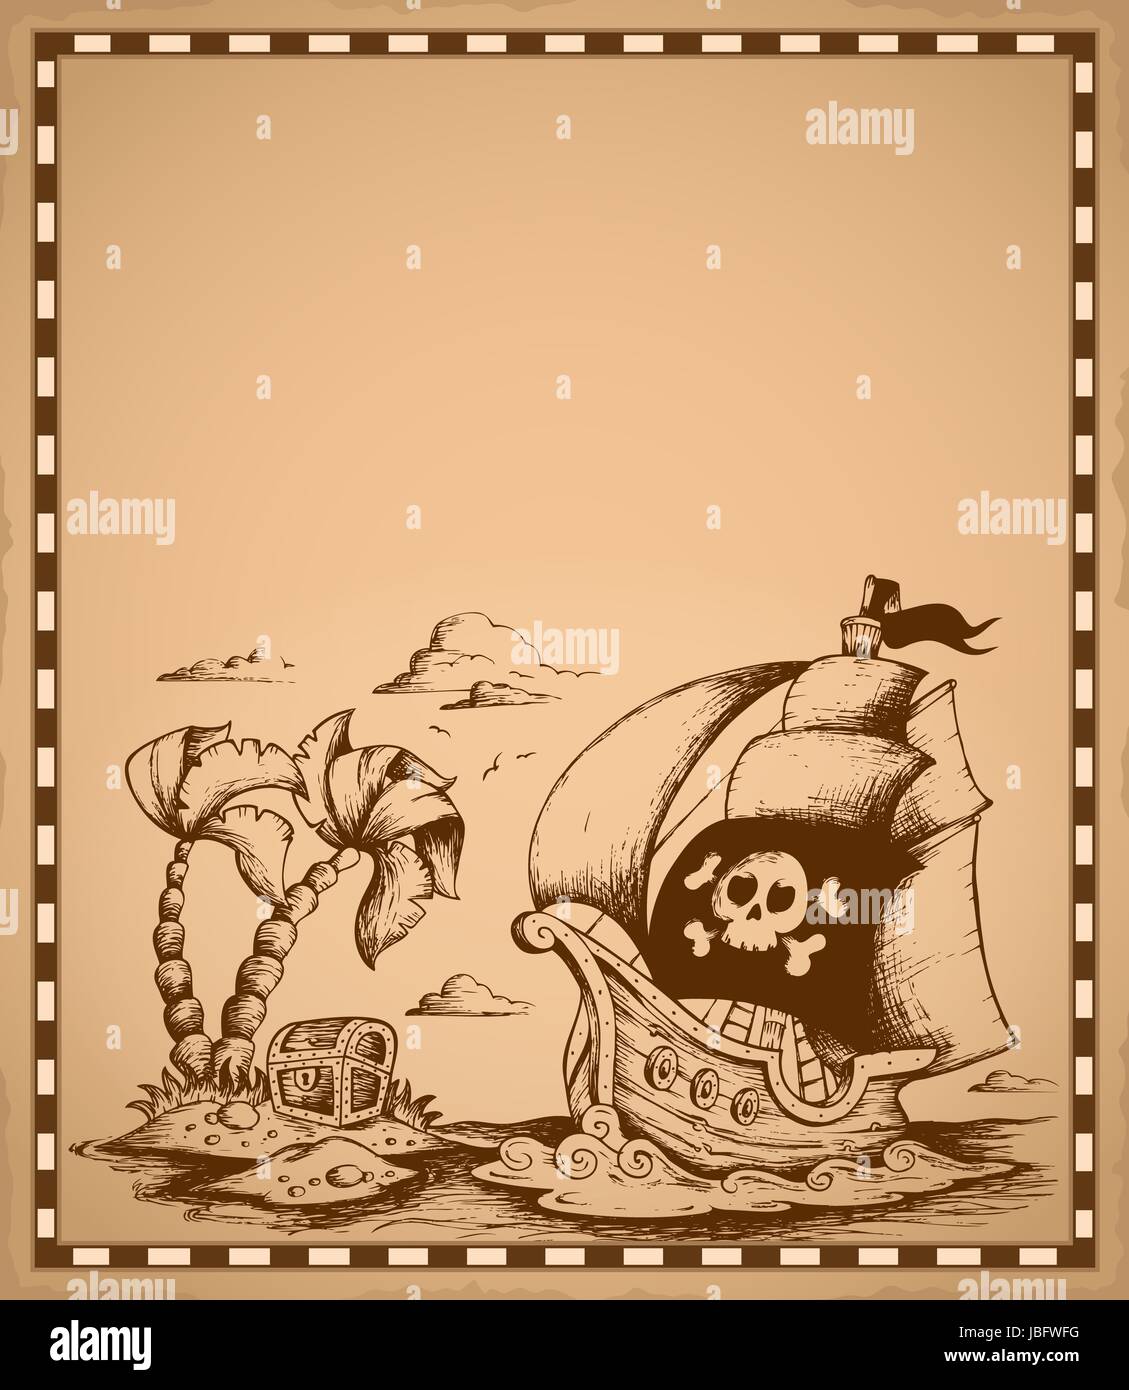 Piraten-Thema Zeichnung auf Pergament 2 - Bild-Darstellung. Stockfoto